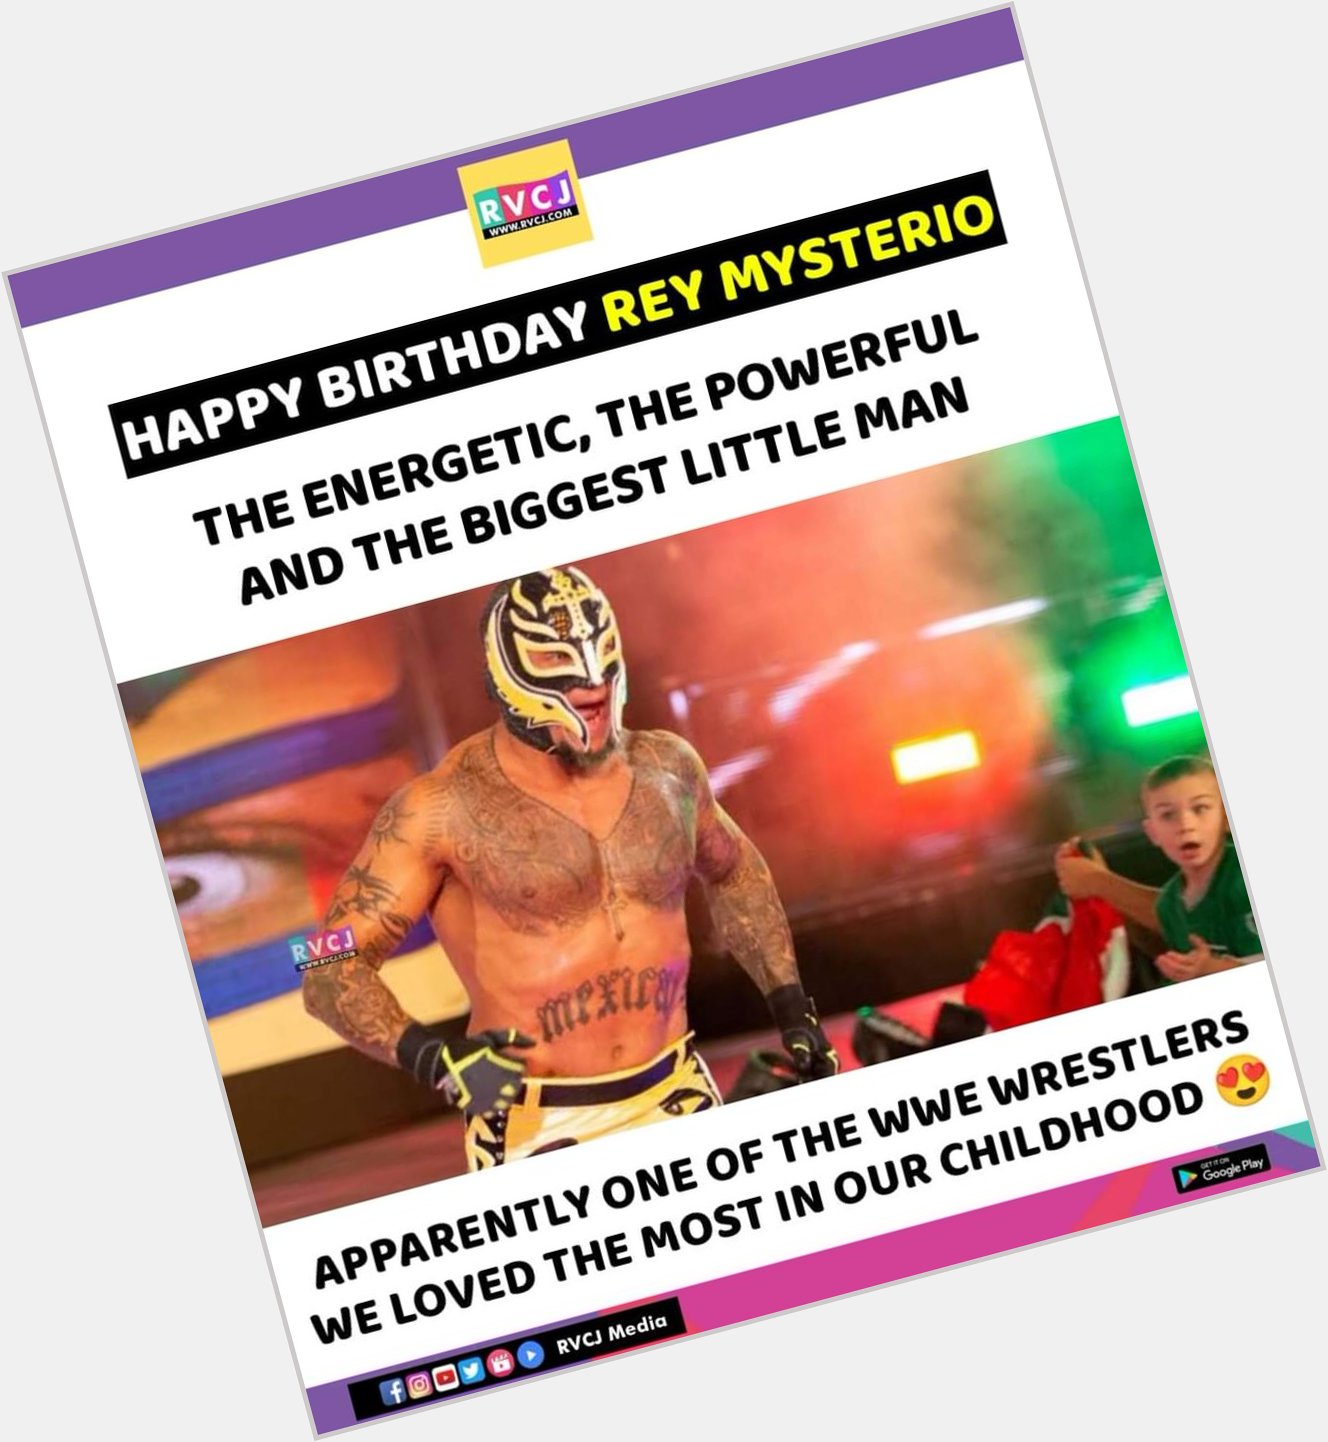 Happy Birthday Rey Mysterio!   